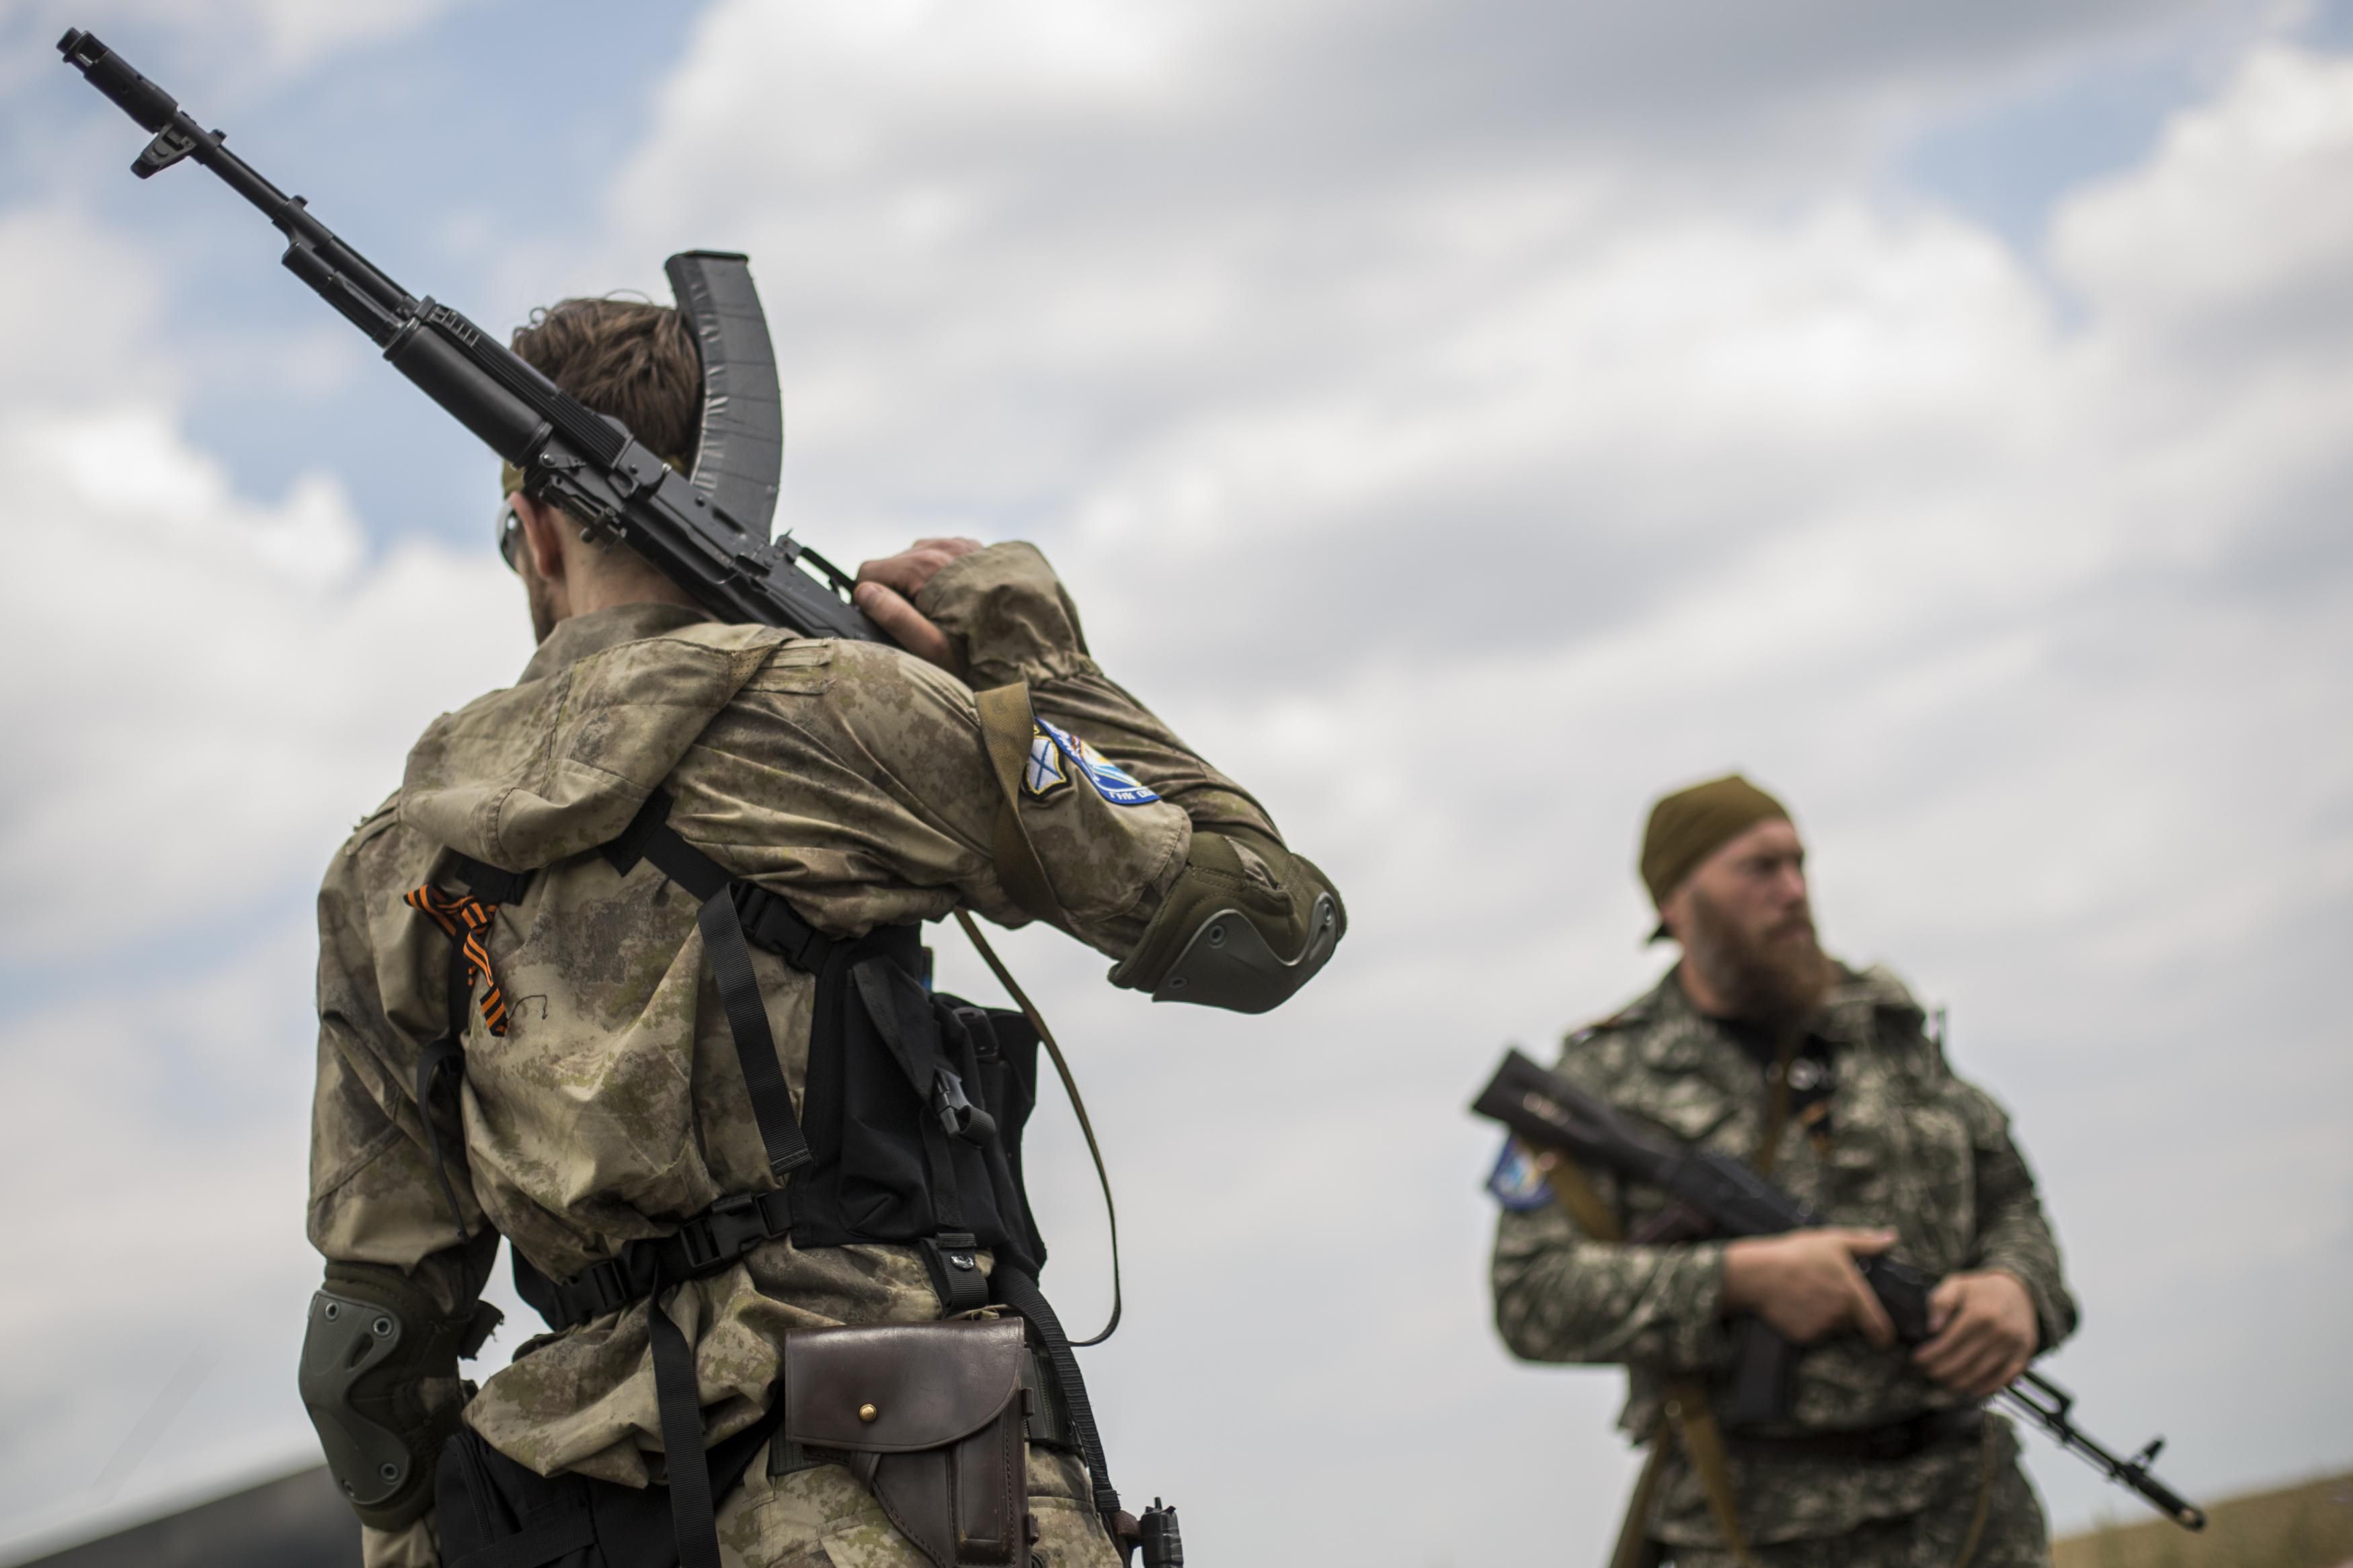  Разведка на Донбассе - боевики хотят привлекать казаков с территории России